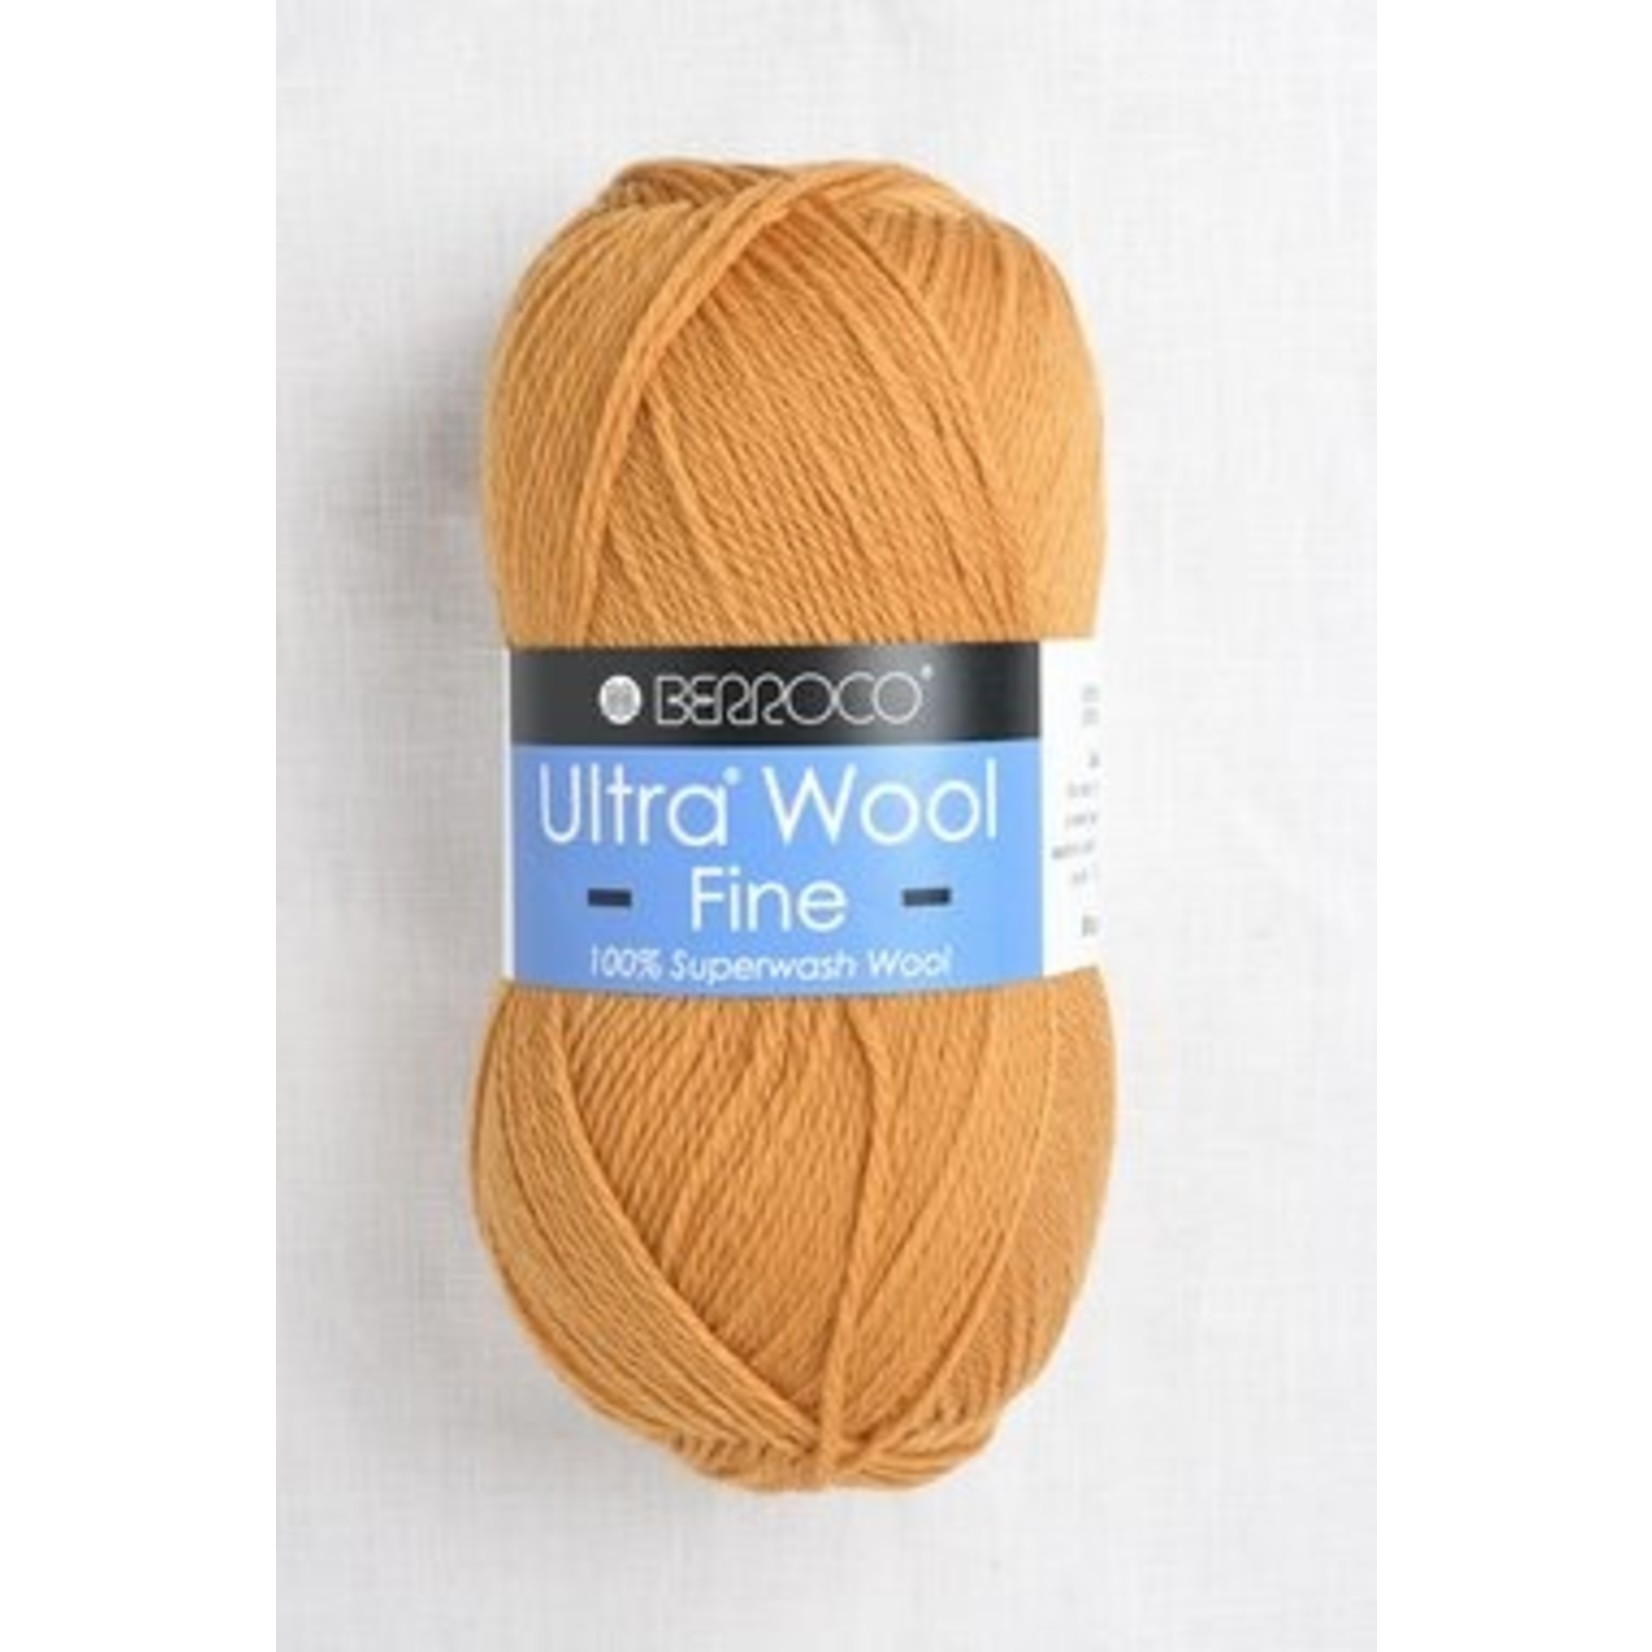 Berroco Berroco Ultra Wool Fine, 5329, Butternut